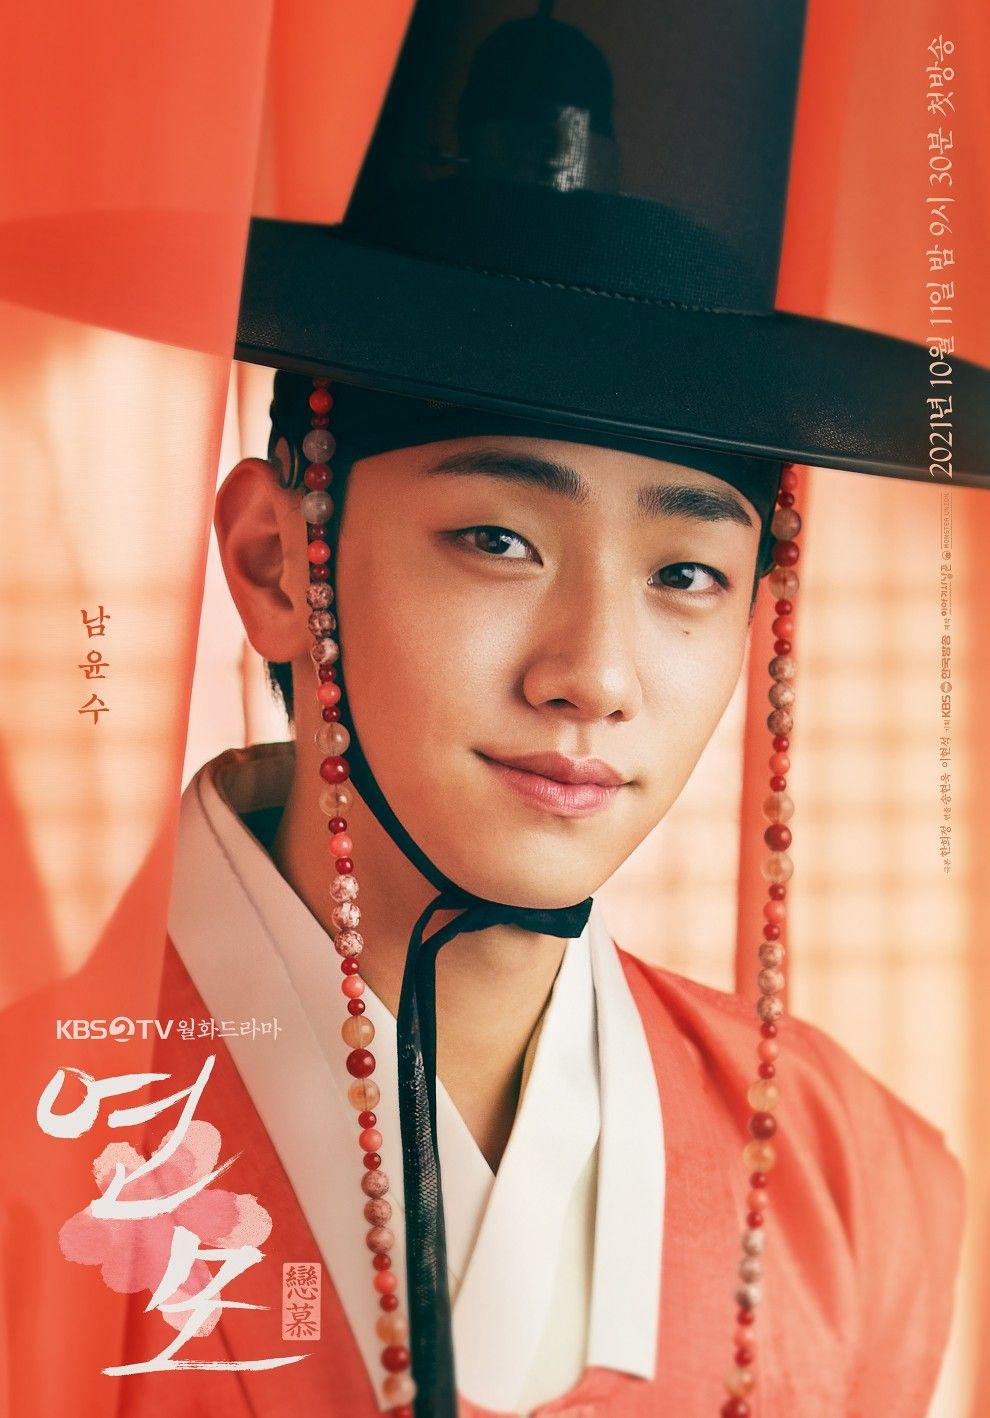 รีวิวซีรีย์เกาหลีเรื่อง The King’s Affection  ราชันผู้งดงาม2